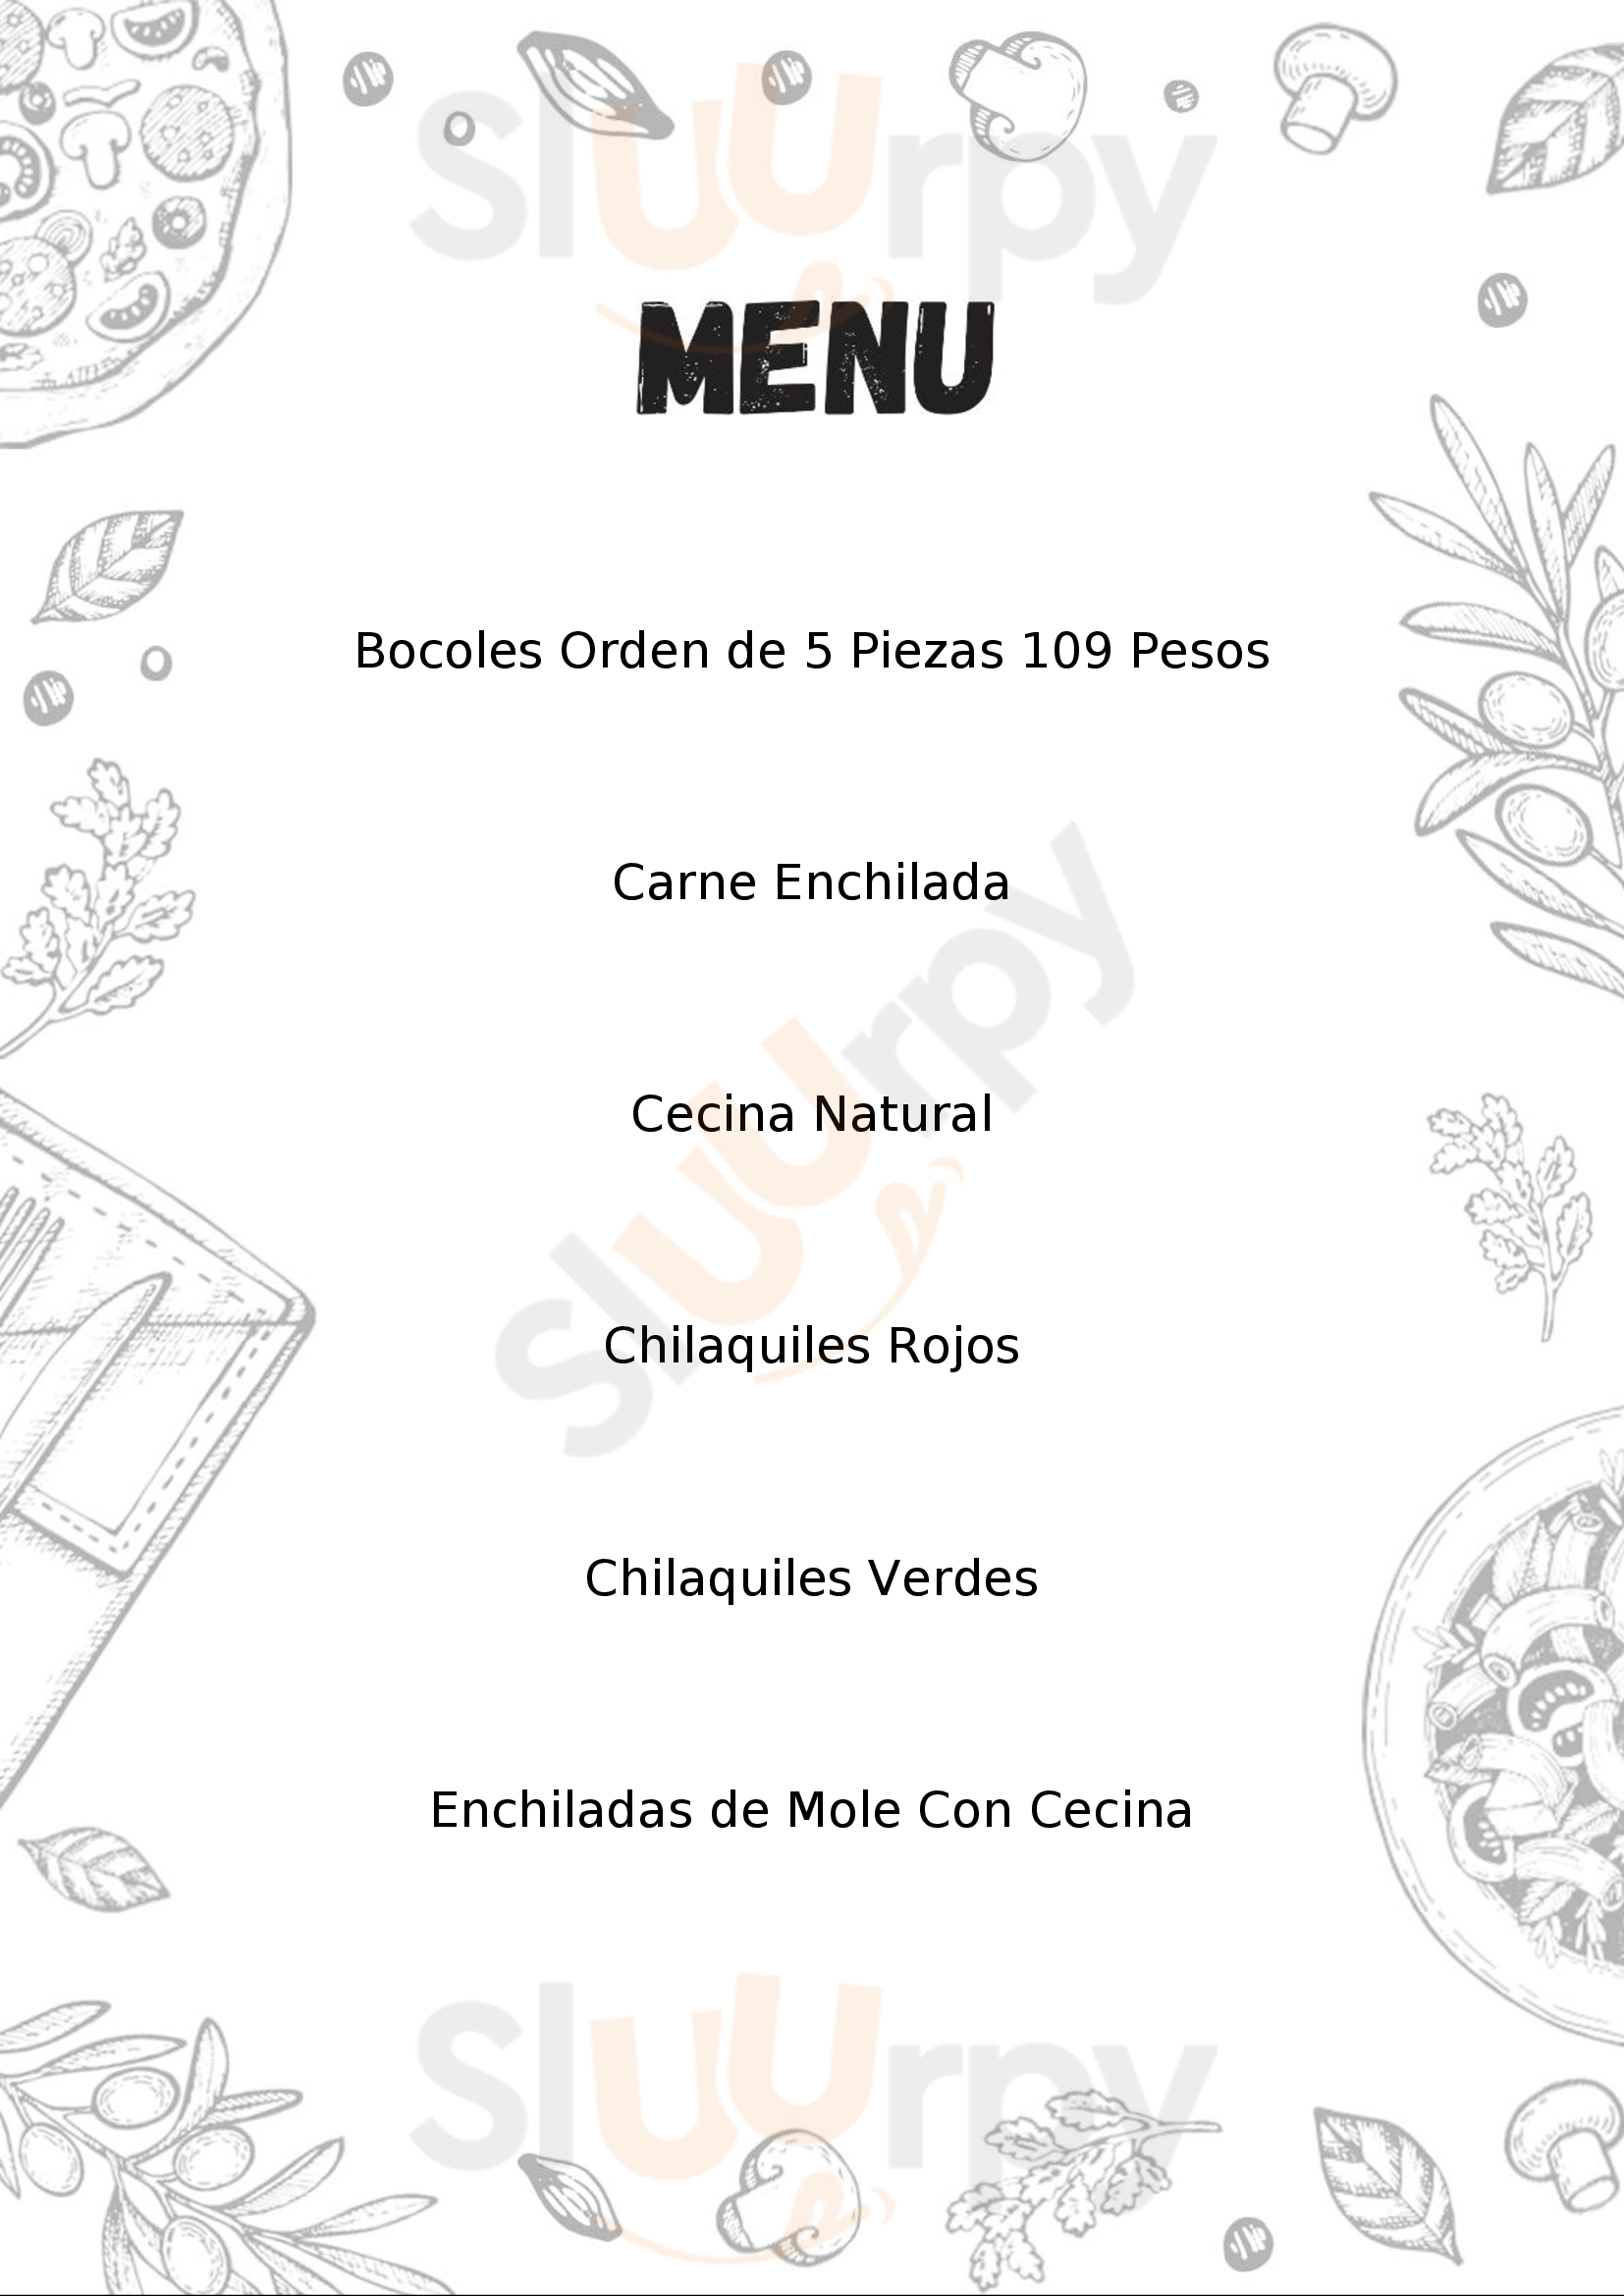 Las Enchiladas Huastecas Chetumal Menu - 1